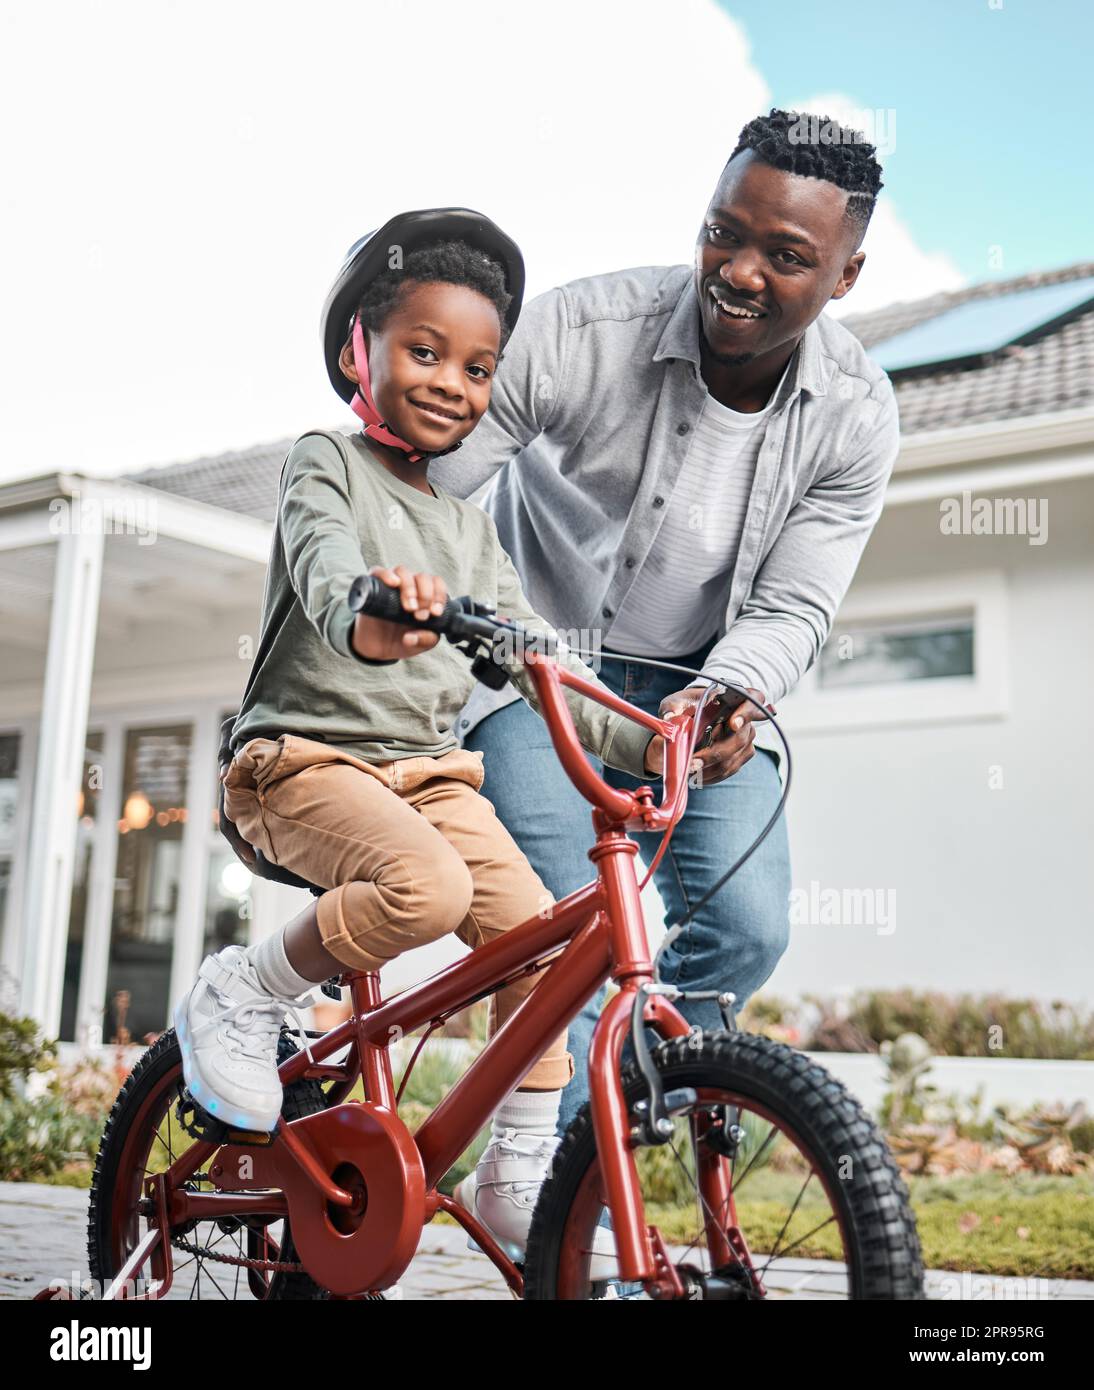 Lebenslange Fähigkeiten entwickeln und dabei jede Menge Spaß haben. Porträt eines entzückenden Jungen, der mit seinem Vater im Freien Fahrrad fahren lernt. Stockfoto